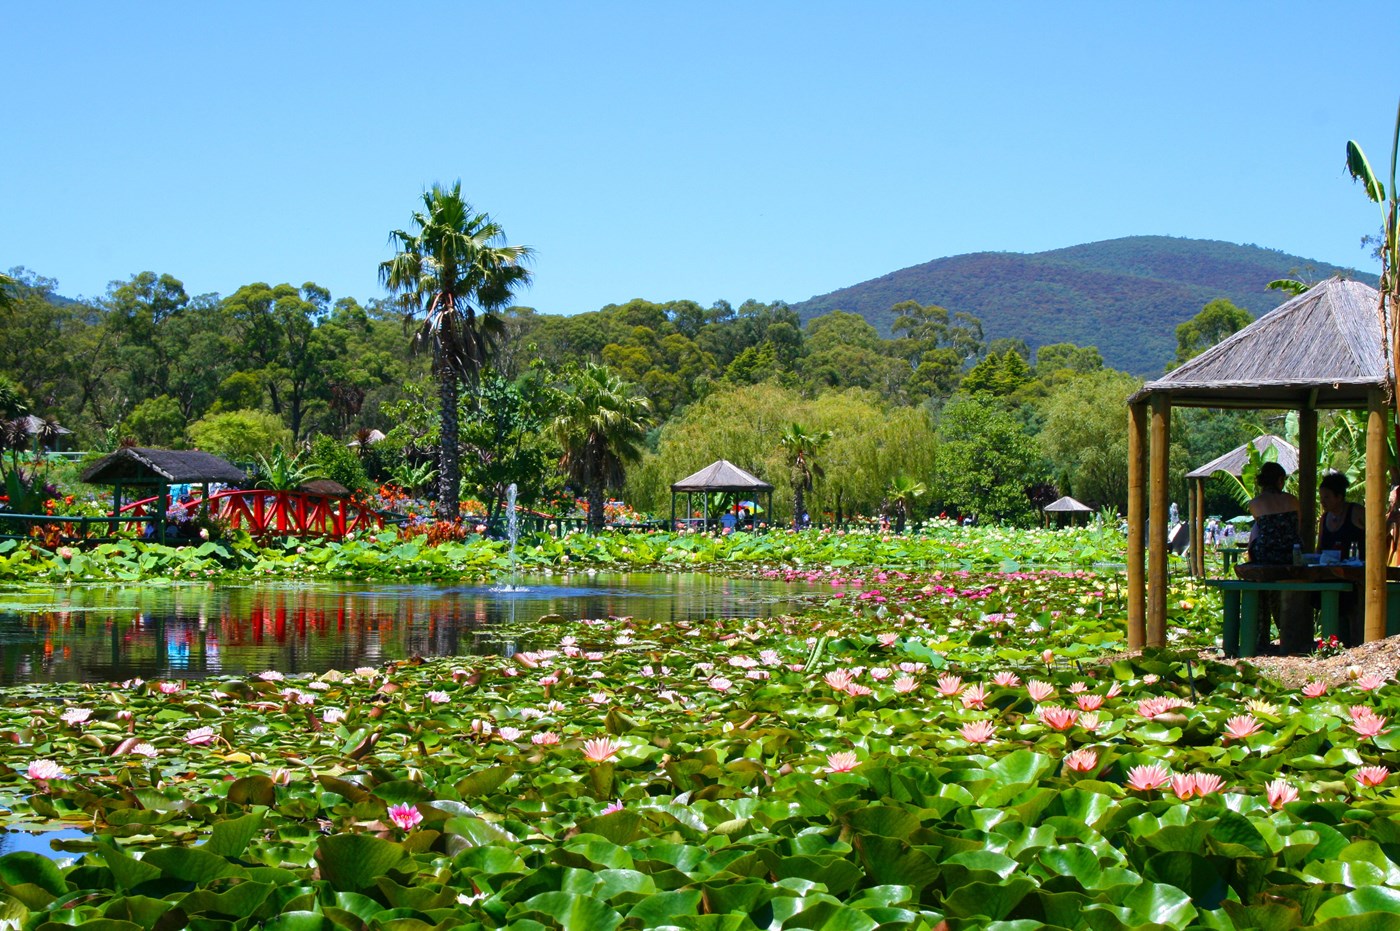 Blue Lotus Water Garden